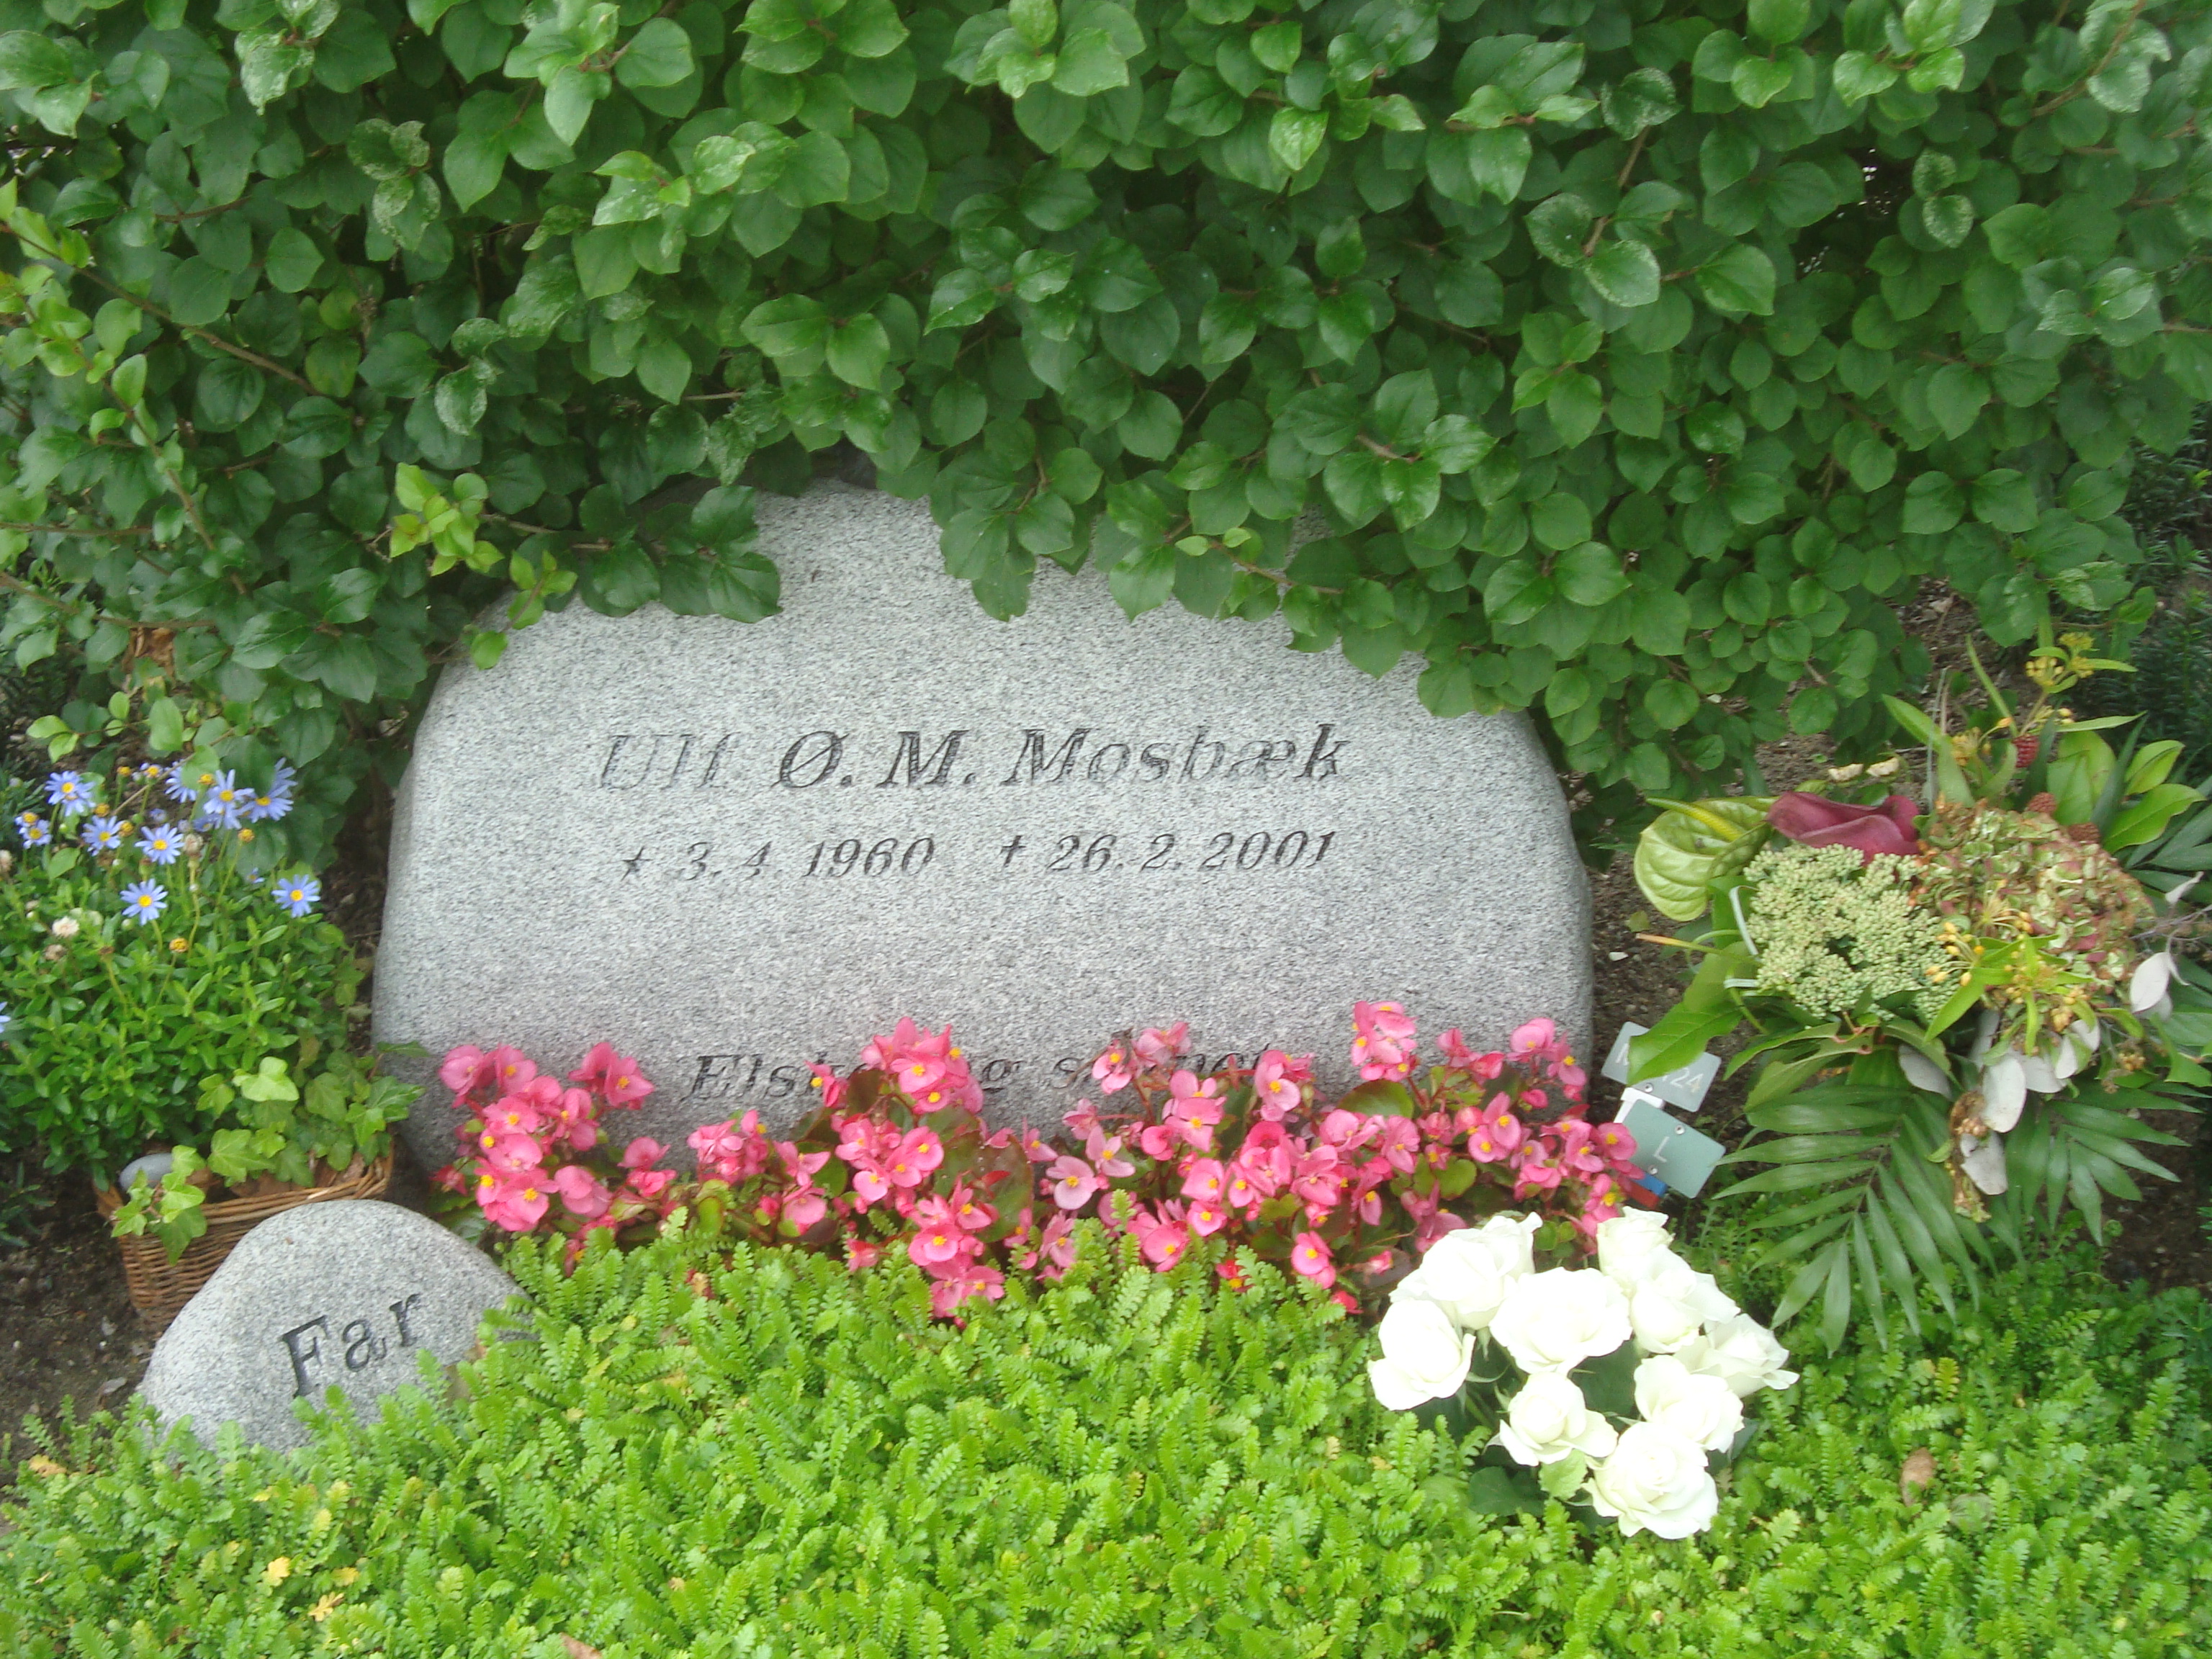 Ulf M. Mosbaek.JPG